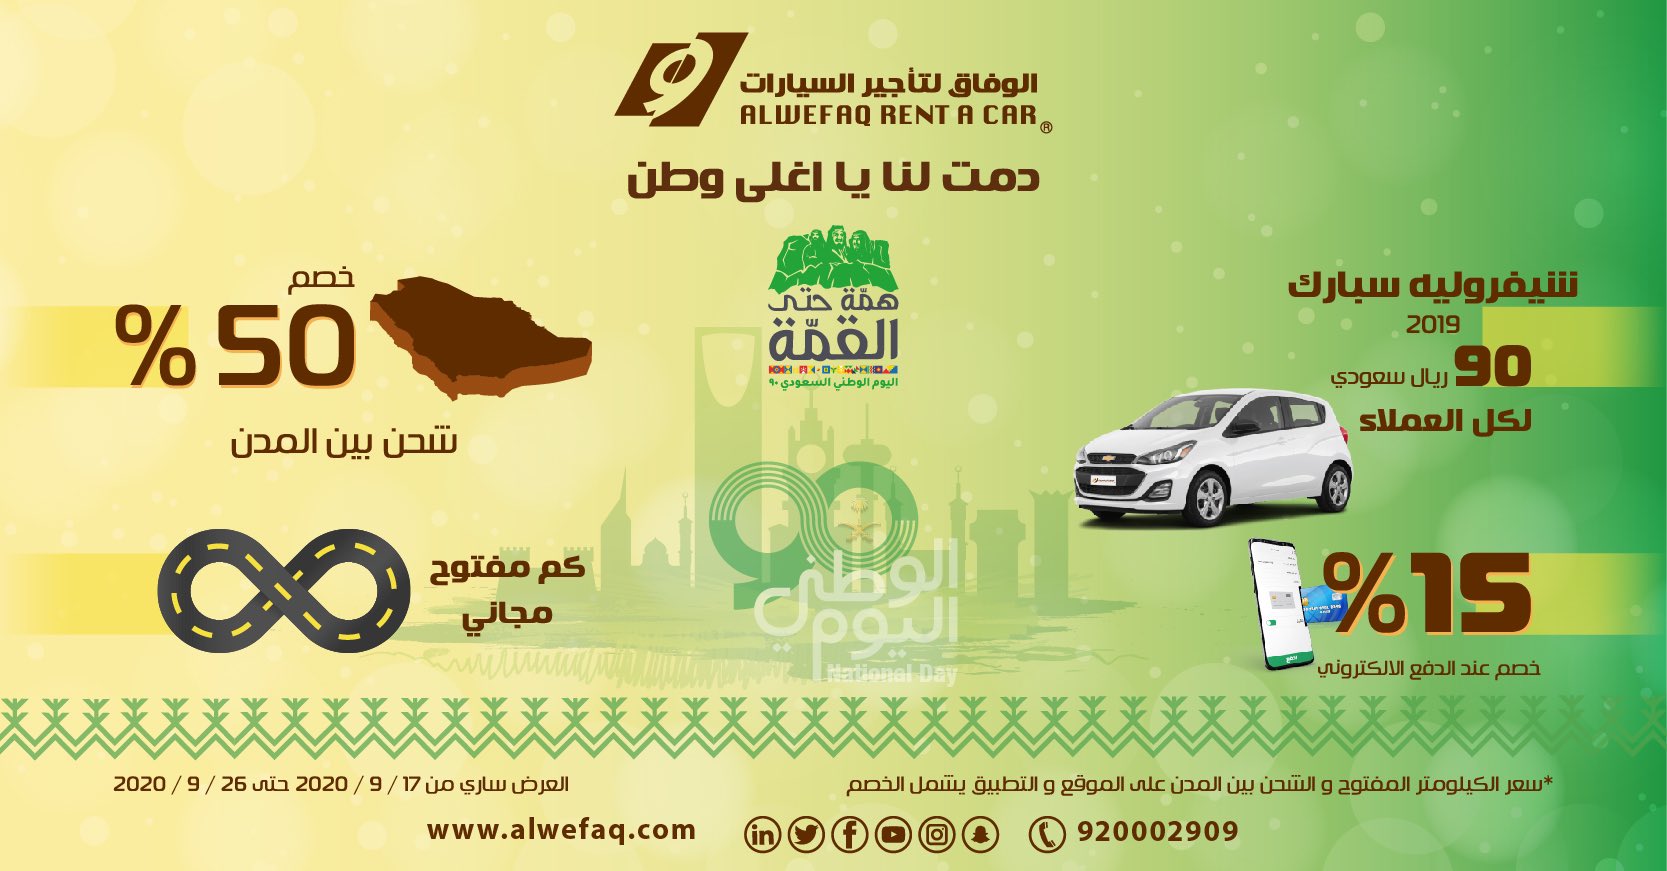 عروض اليوم الوطني 90 : عروض الوفاق لتأجير السيارات سيارة Spark بـ 90 ريال